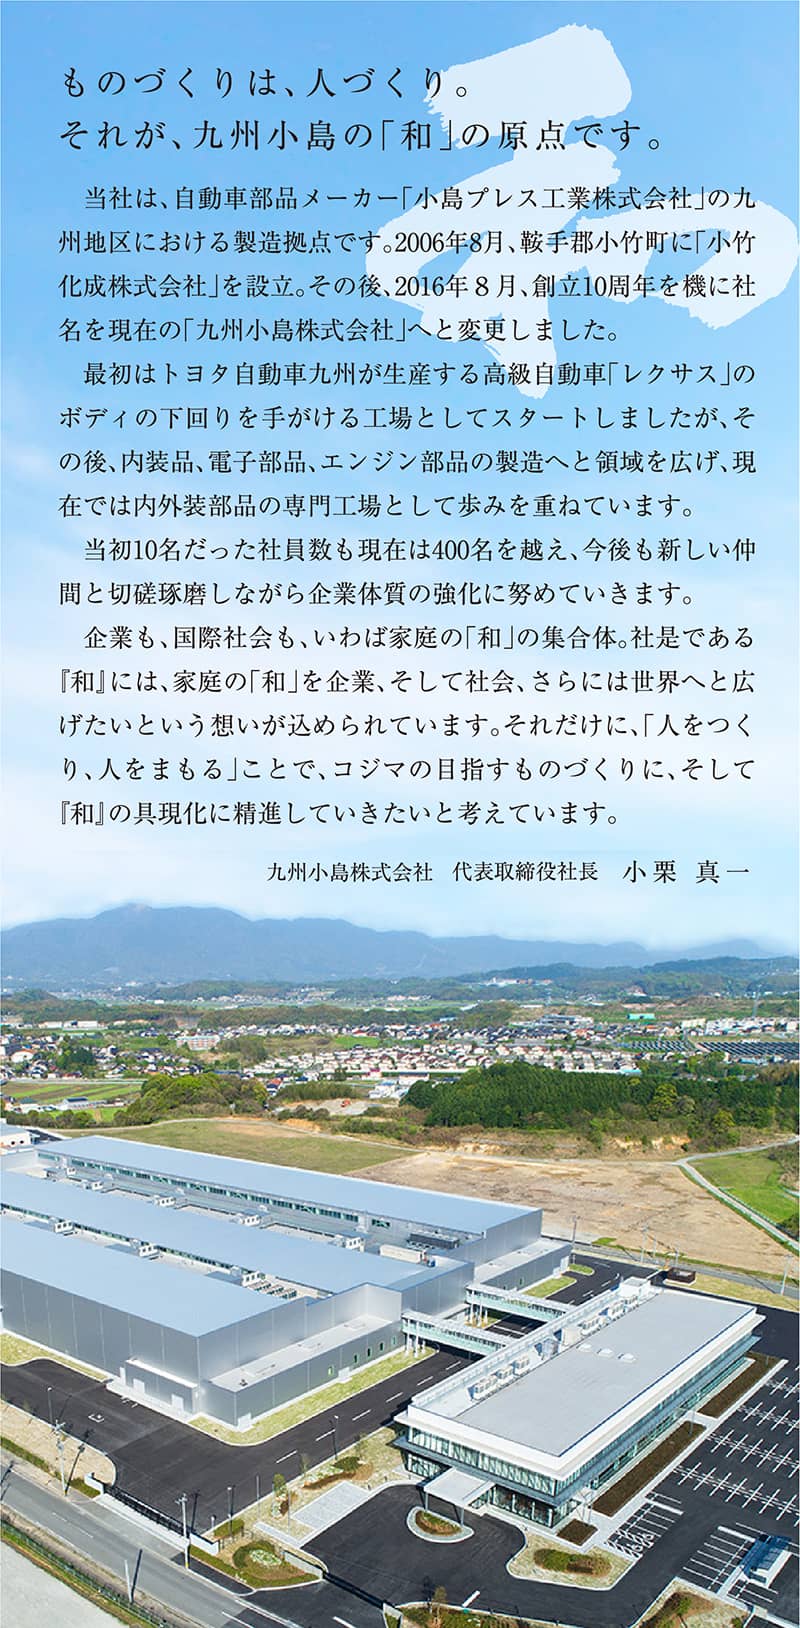 ものづくりは、人づくり。それが、九州小島の「和」の原点です。